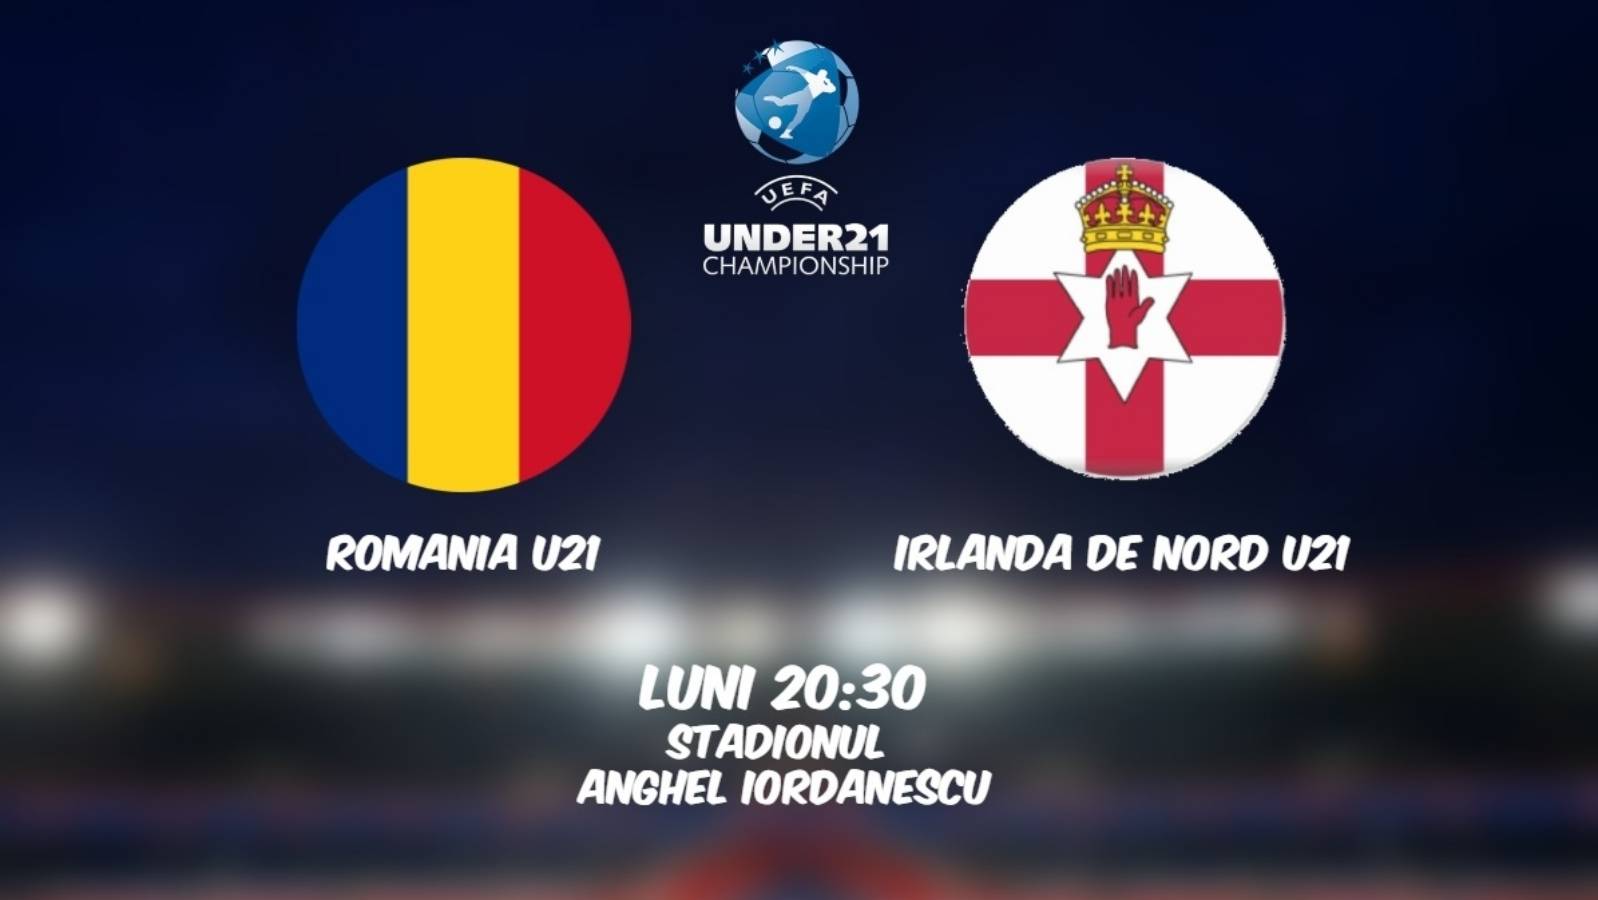 ROEMENIË U21 – NOORD-IERLAND U21 LIVE PRO TV EURO 2021